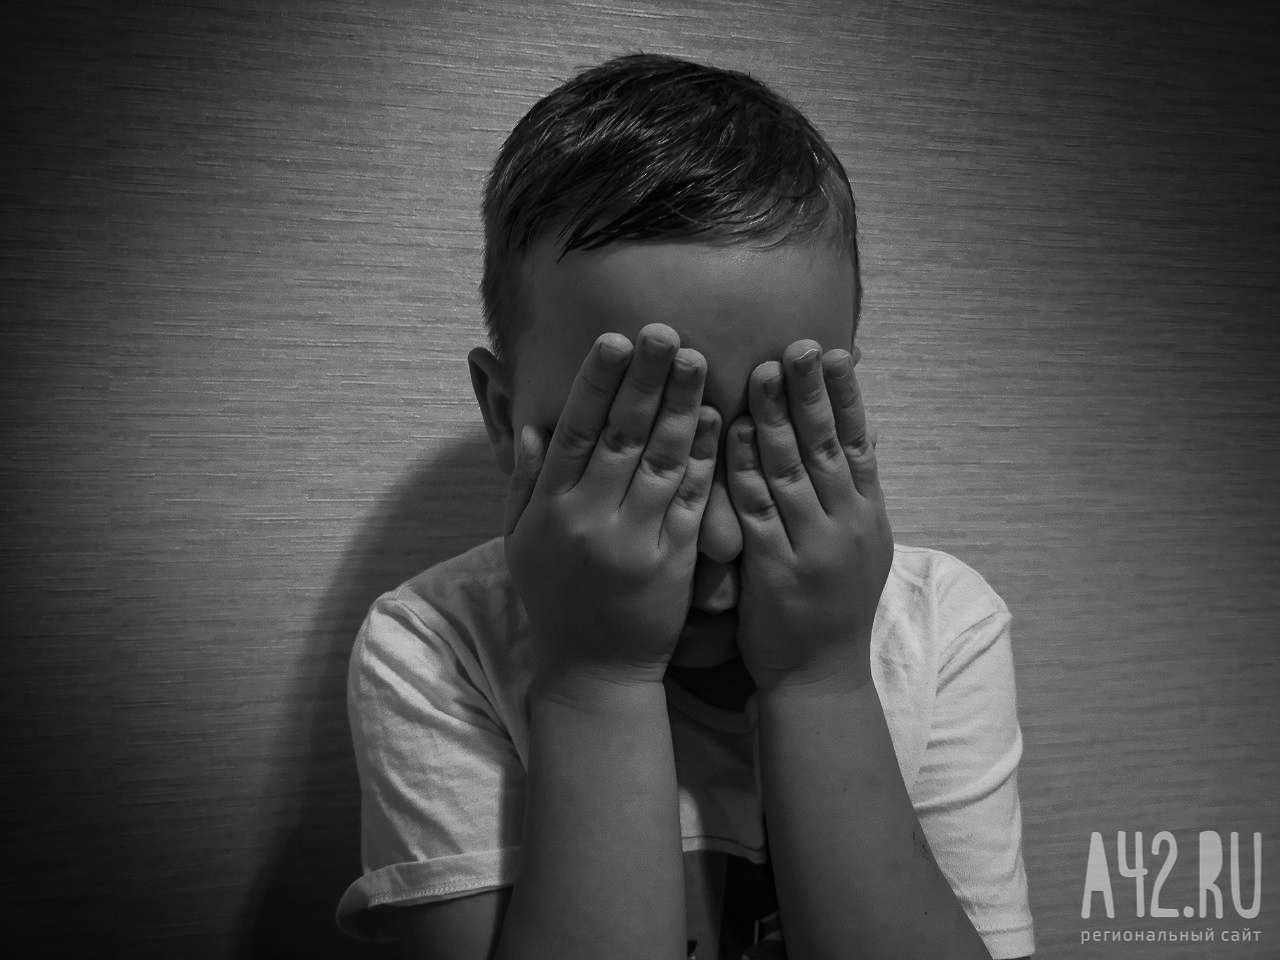 В Новосибирске соседи вызвали спасателей из-за запертых в квартире плачущих детей